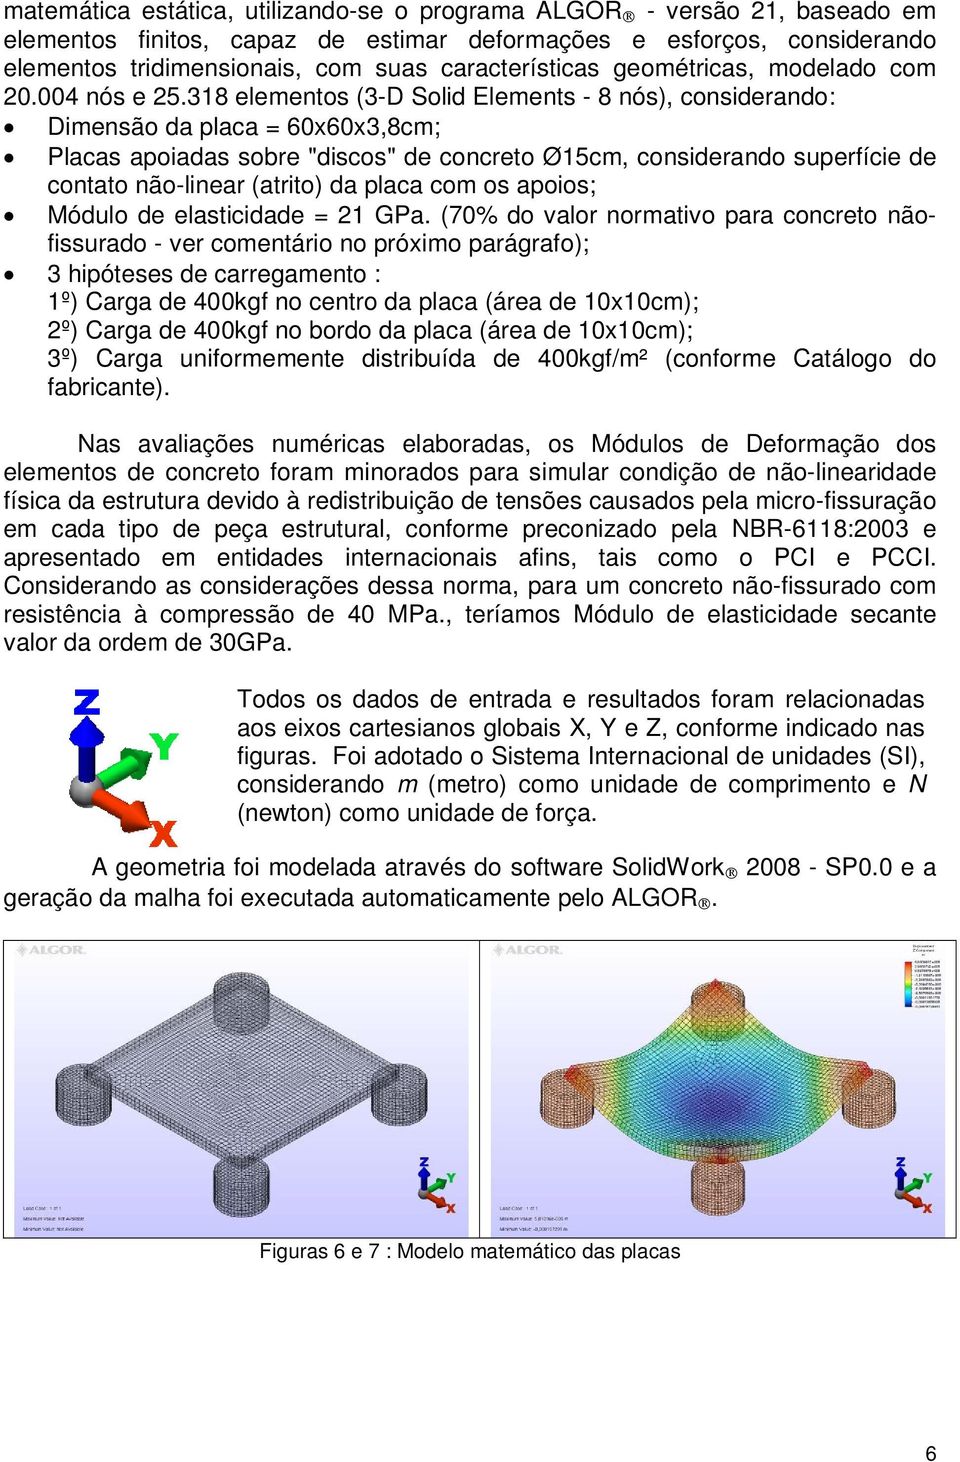 318 elementos (3-D Solid Elements - 8 nós), considerando: Dimensão da placa = 60x60x3,8cm; Placas apoiadas sobre "discos" de concreto Ø15cm, considerando superfície de contato não-linear (atrito) da